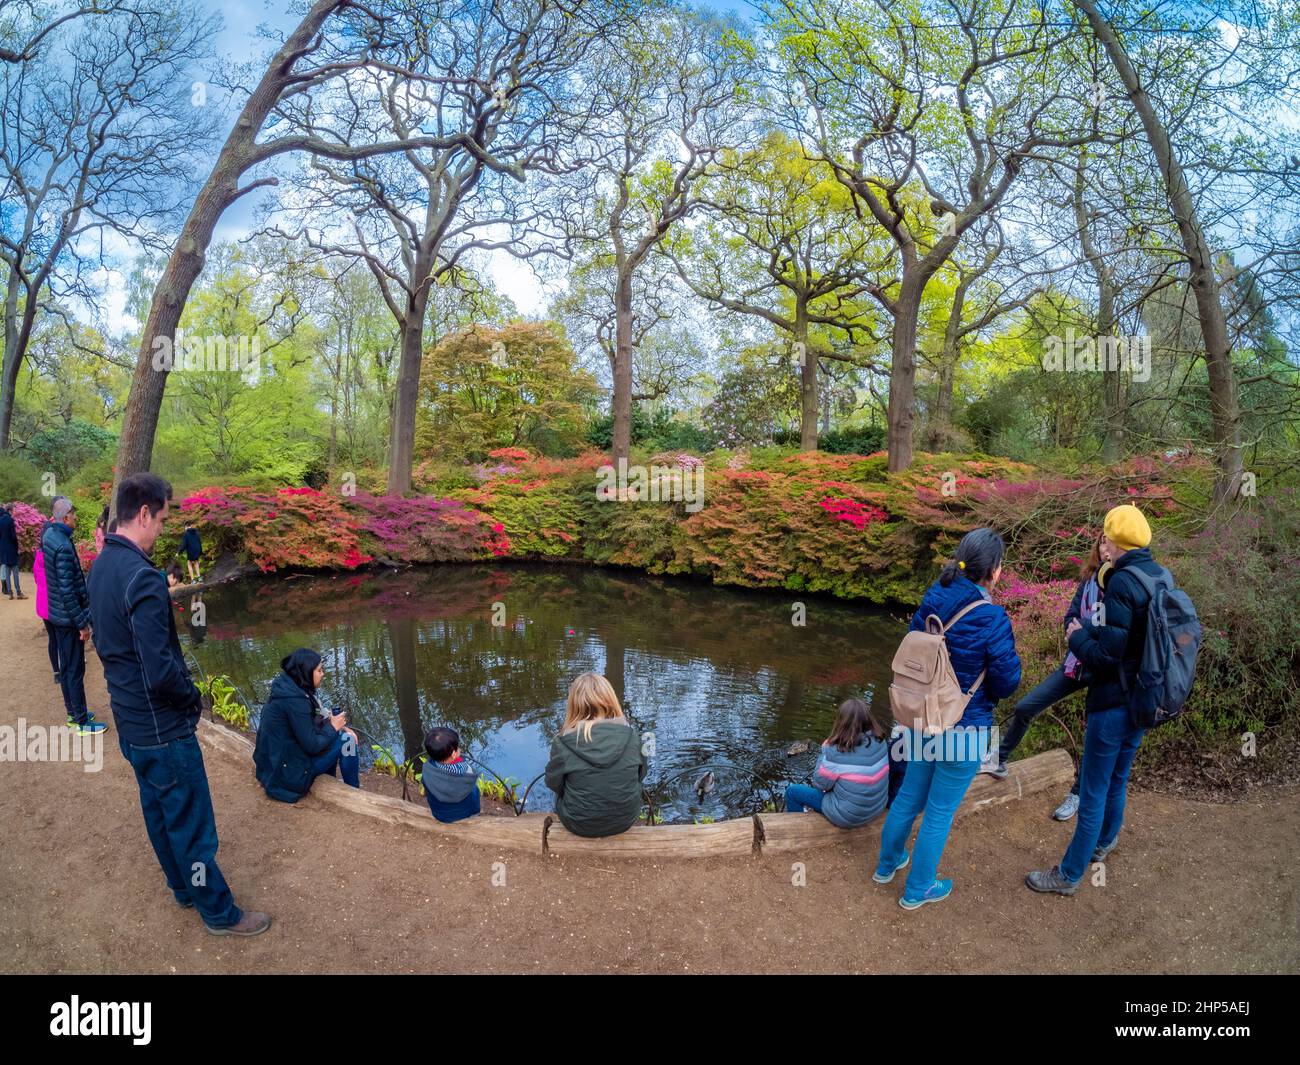 Londres, Angleterre, Royaume-Uni - 1 mai 2021 : vue panoramique sur un groupe de personnes entourant un beau lac à l'intérieur de la célèbre Isabella Plantation au printemps Banque D'Images